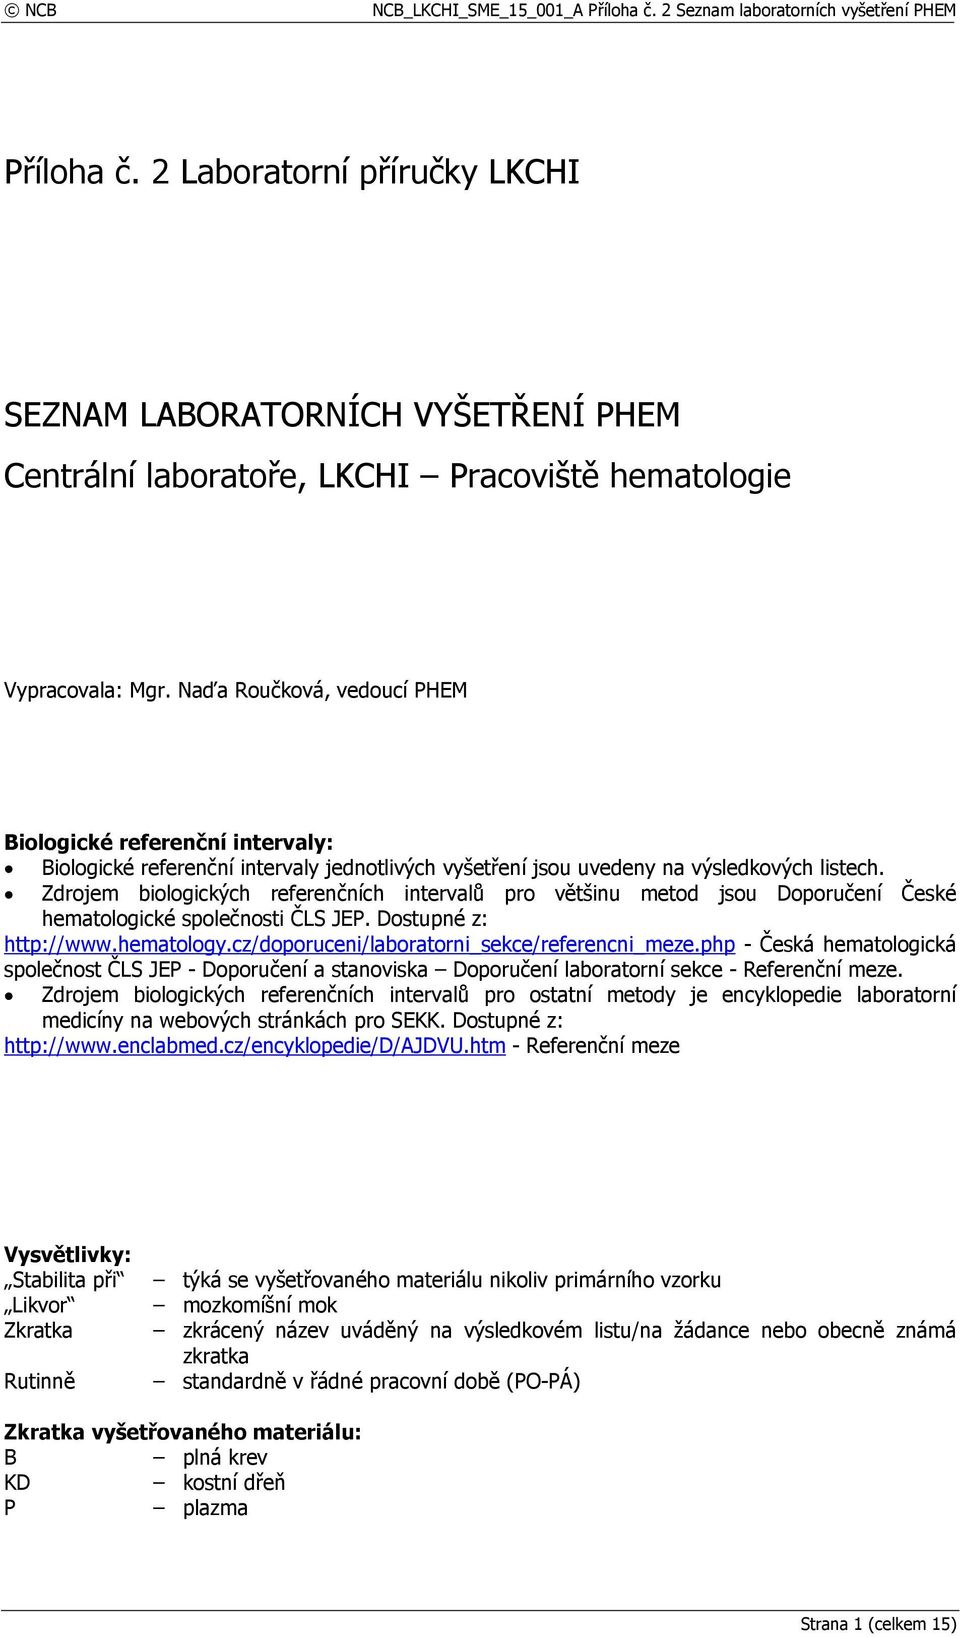 Zdrojem biologických referenčních intervalů pro většinu metod jsou Doporučení České hematologické společnosti ČLS JEP. Dostupné z: http://www.hematology.